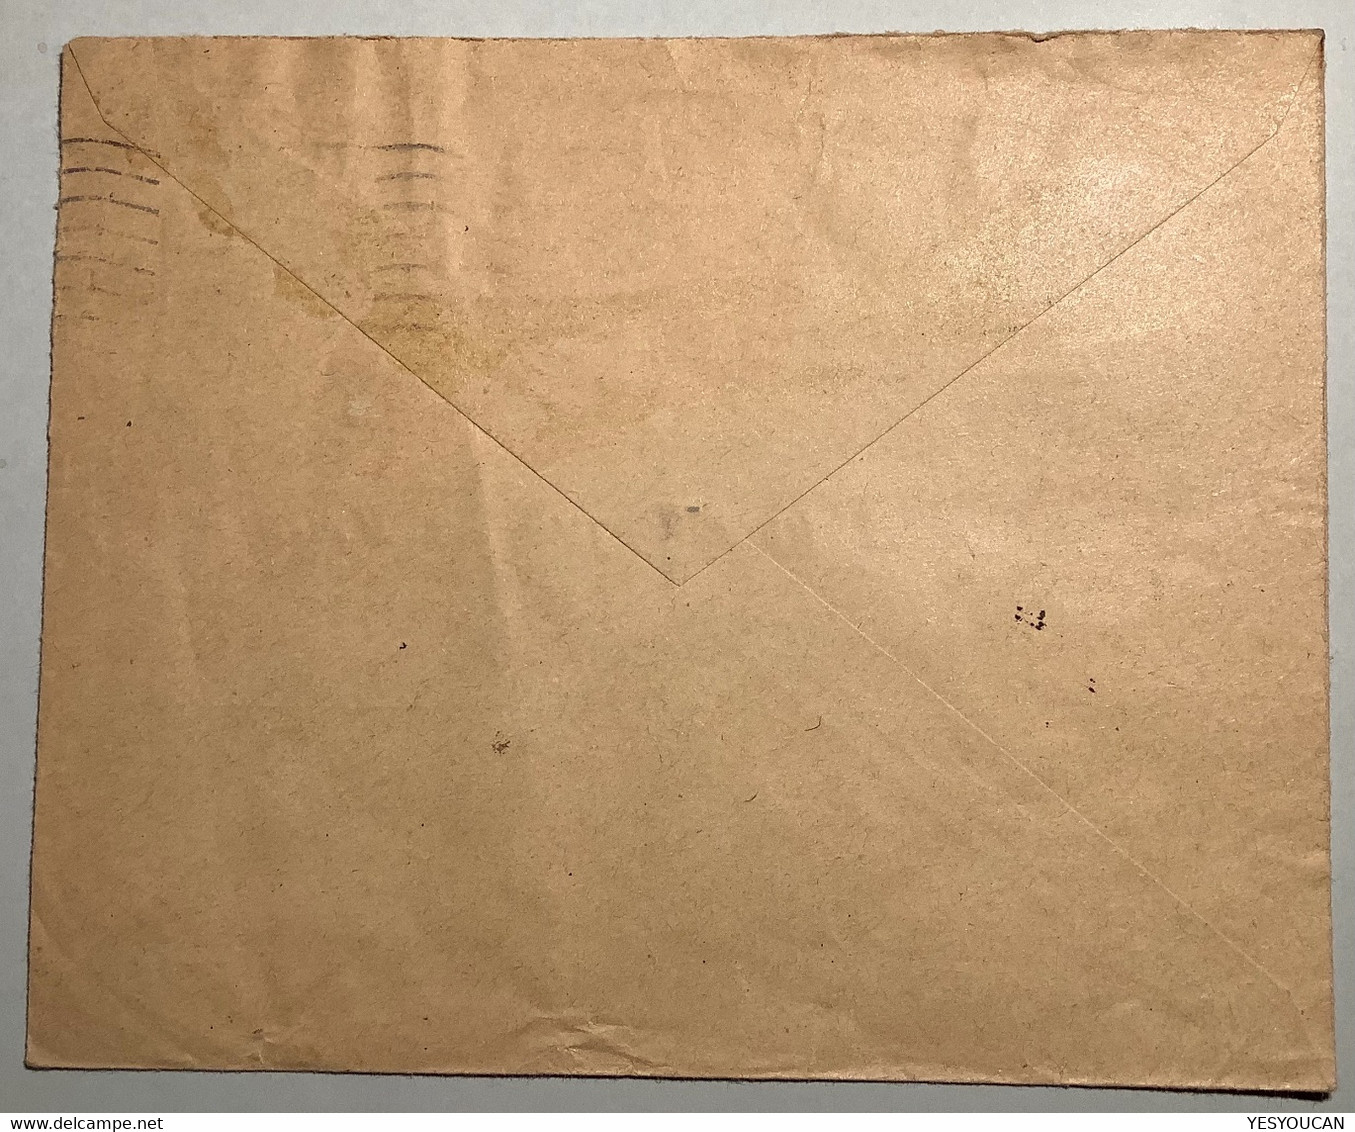 LYON "R.F" LIBERATION Oblit RARE "ST ETIENNE LOIRE 1944"lettre Non Philatelique Banque De France Pétain(WW2 War Guerre - Bevrijding